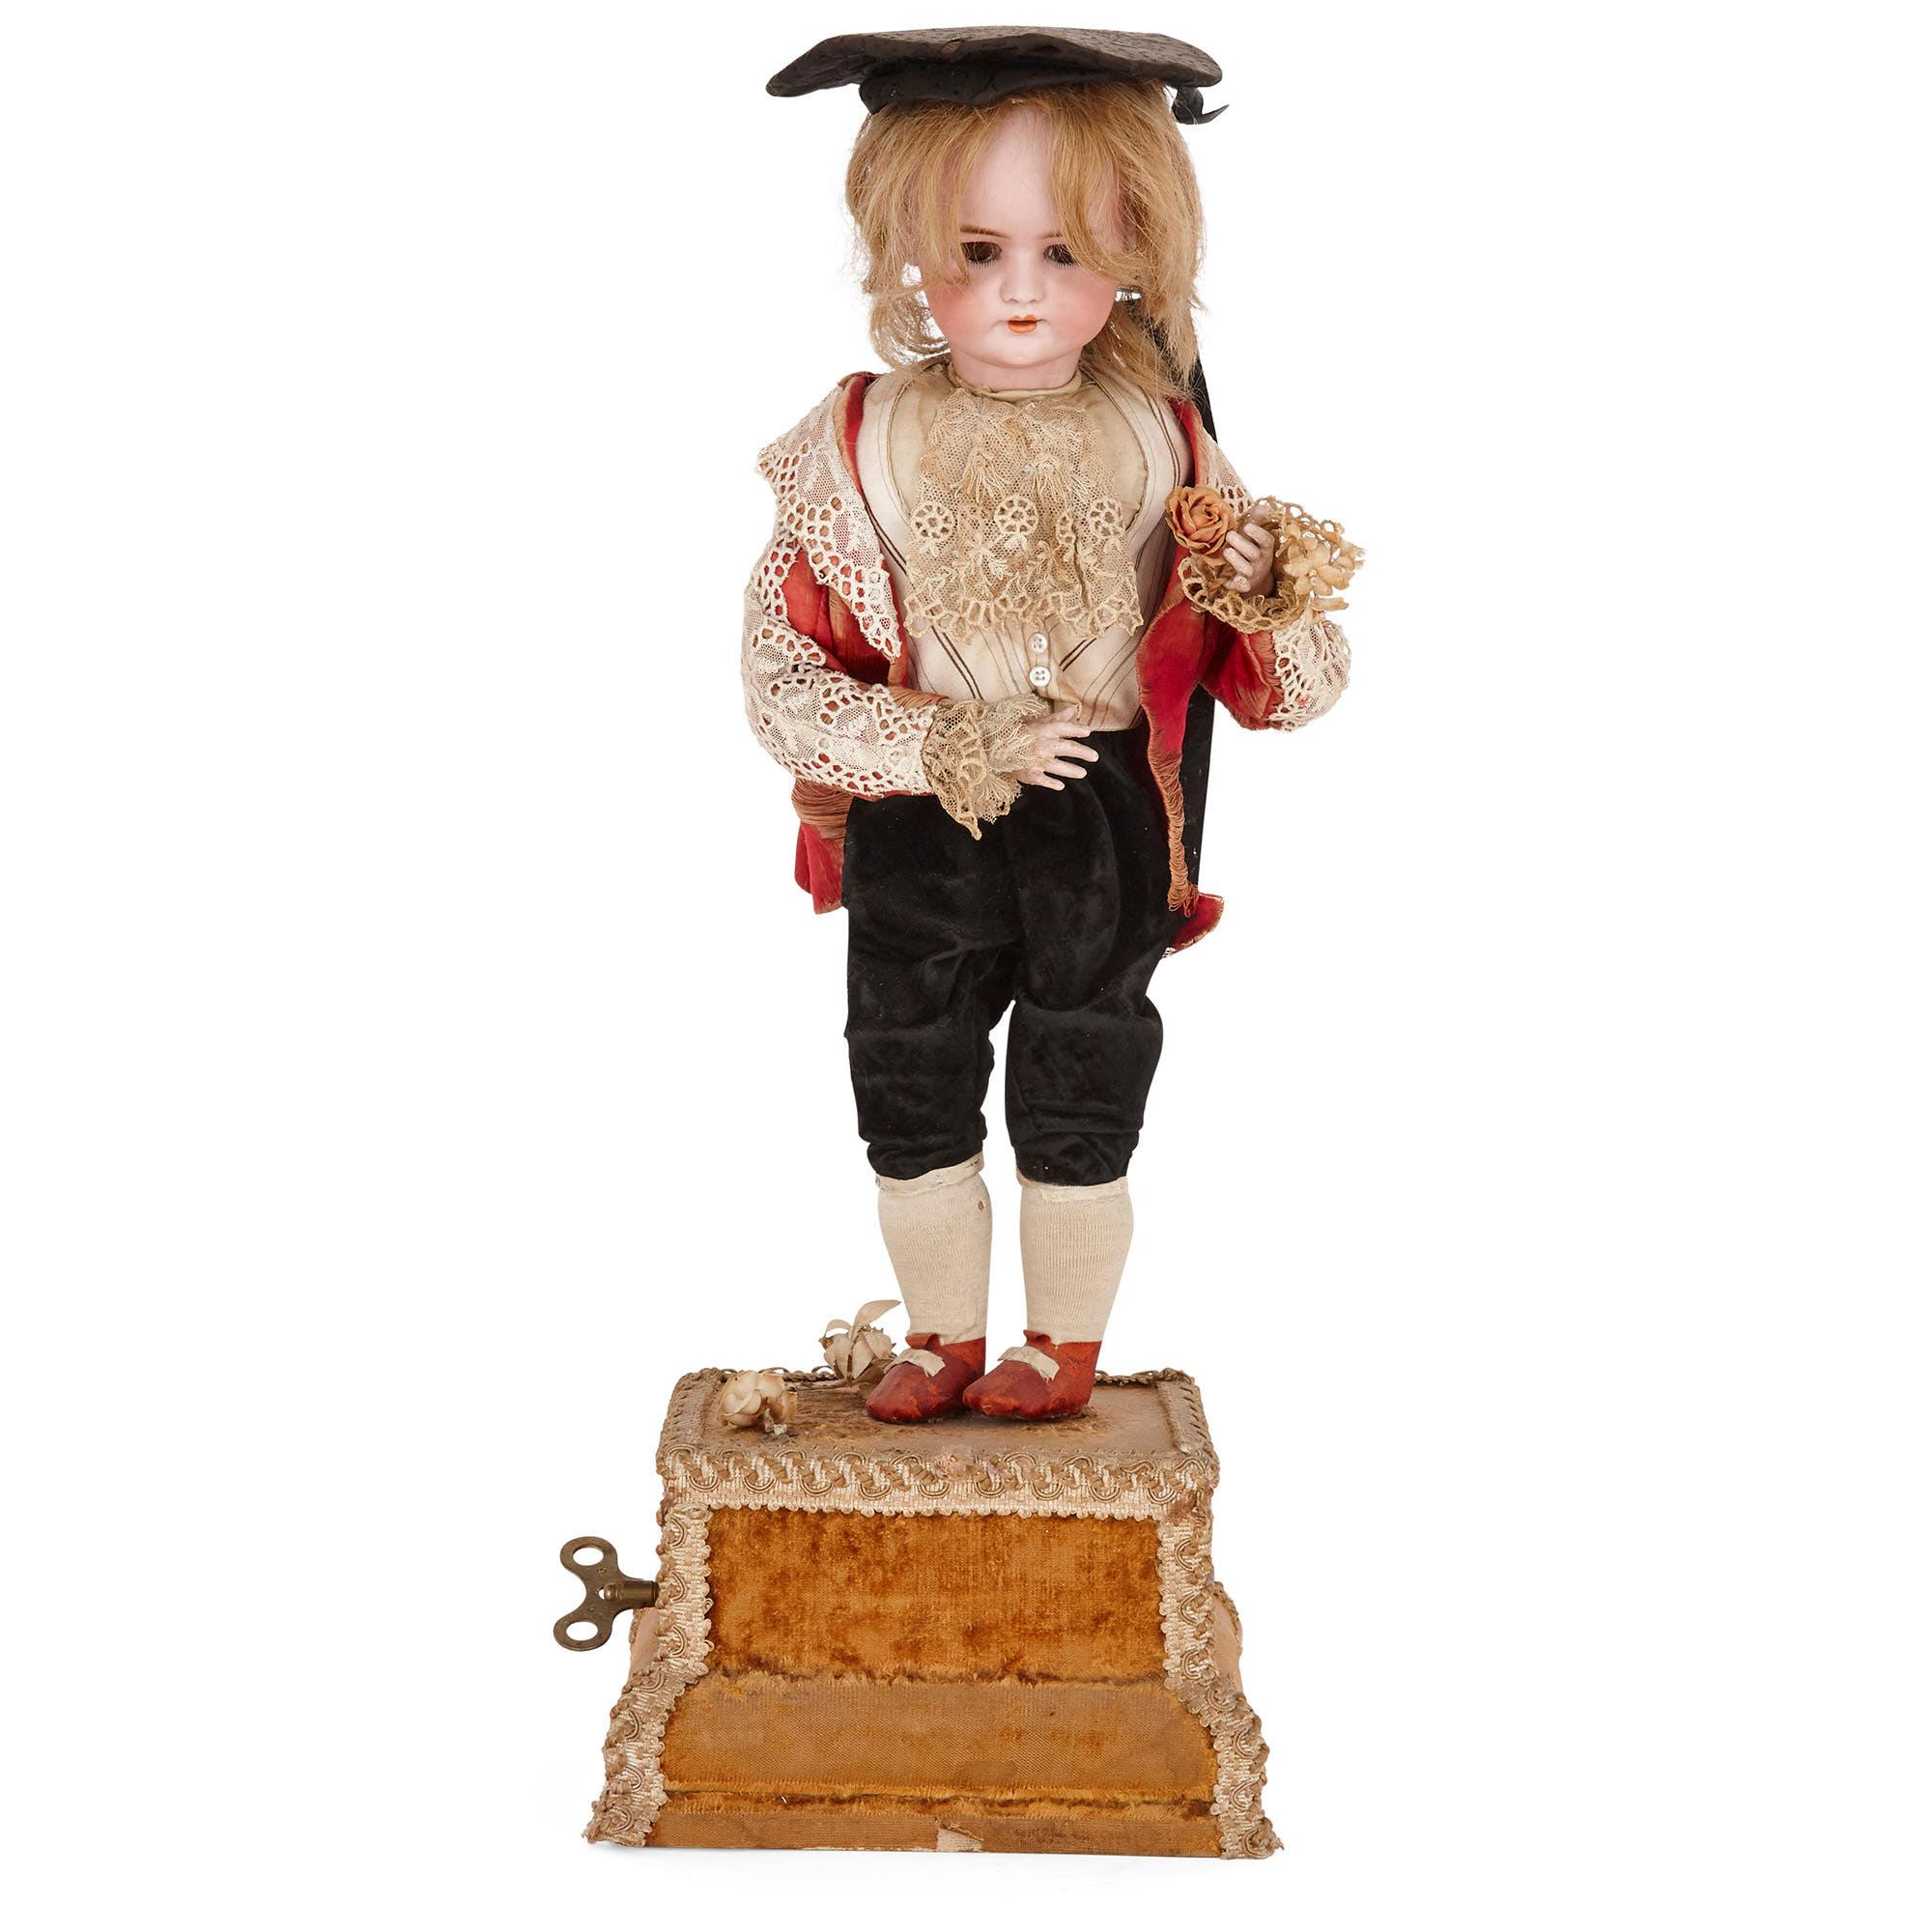 Figure d'automate en porcelaine biscuit inhabituelle
Continental, vers 1900
Mesures : Hauteur 57 cm, largeur 21 cm, profondeur 21 cm

Cette poupée inhabituelle prend la forme d'un jeune garçon habillé en costume d'époque. La tête du garçon est